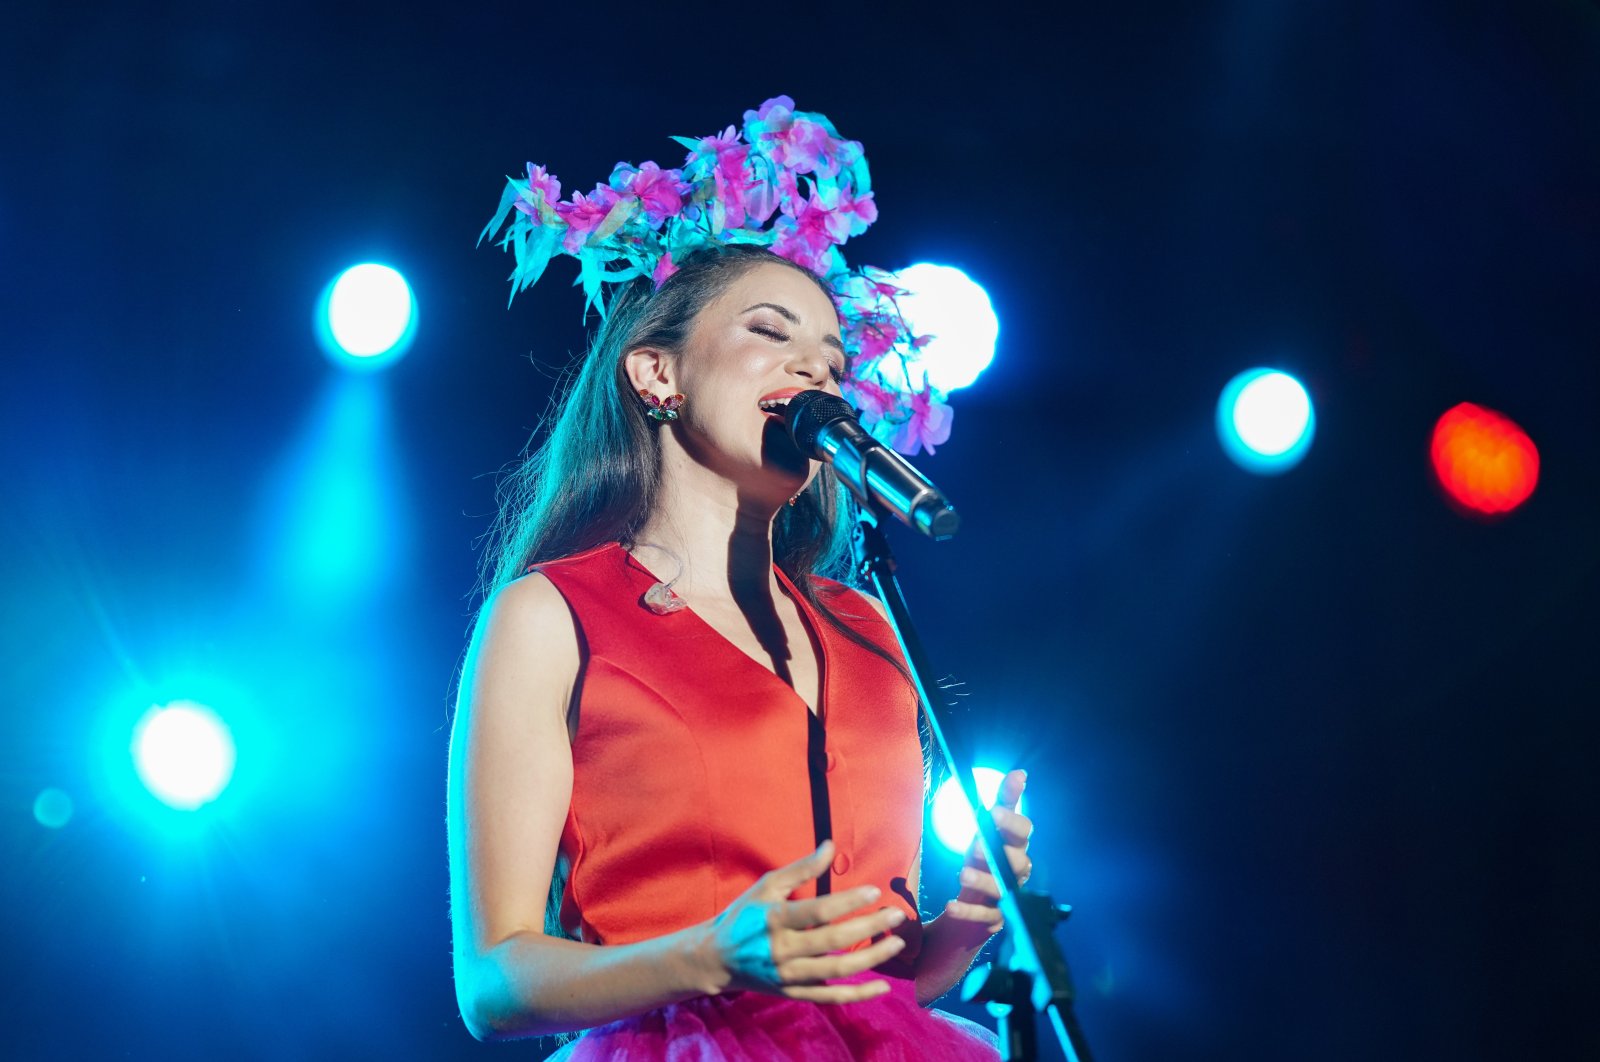 Penyanyi Belanda Turki Karsu untuk tampil di Istanbul dengan catatan penuh perasaan